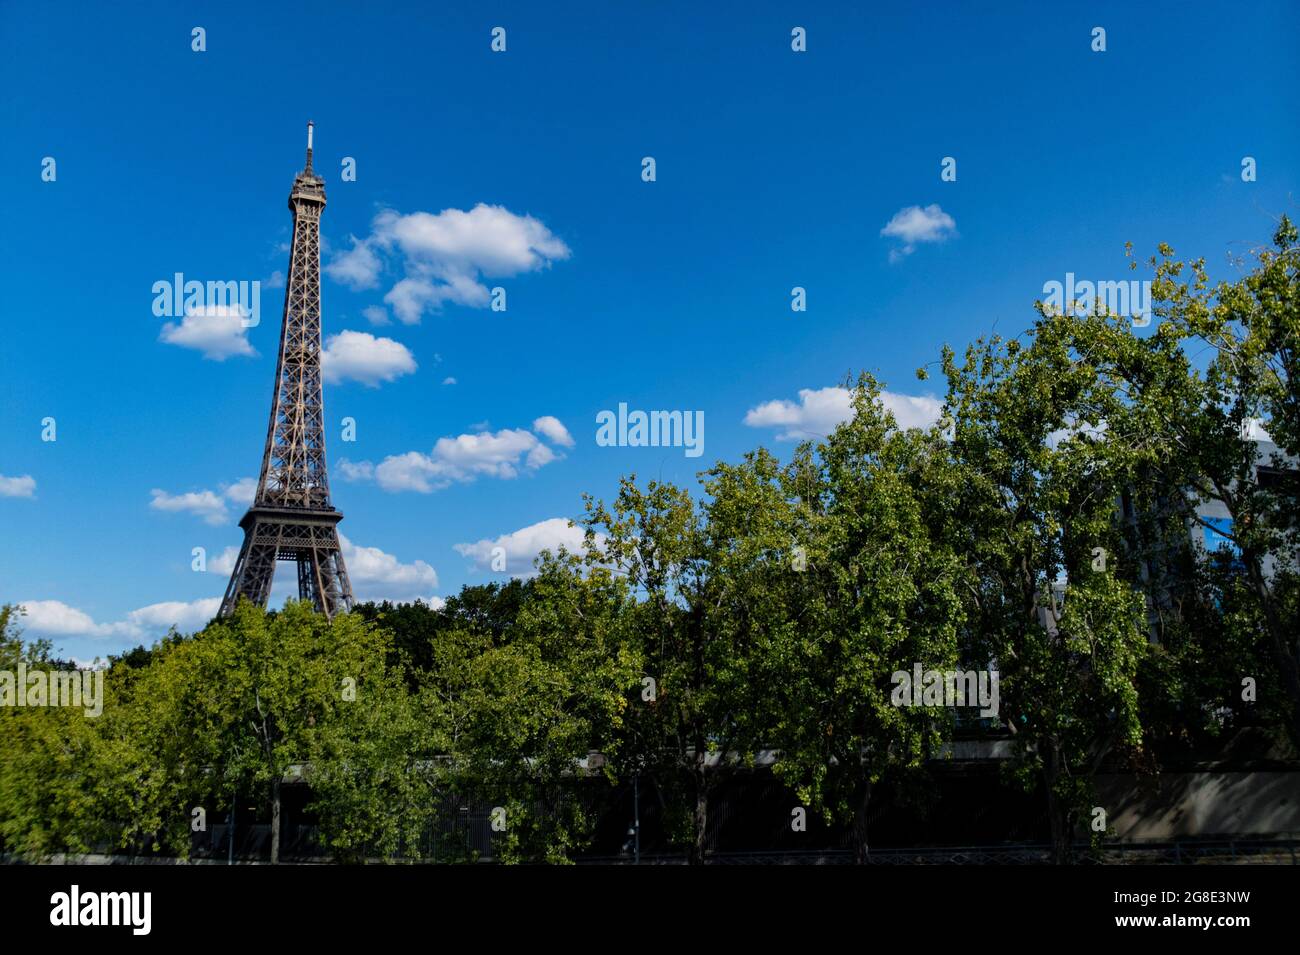 Europe - France, capitale Paris : vue sur la Tour Eiffel mondialement connue depuis le canal de Paris, la tour est située sur le champ de Mars à Paris. Banque D'Images